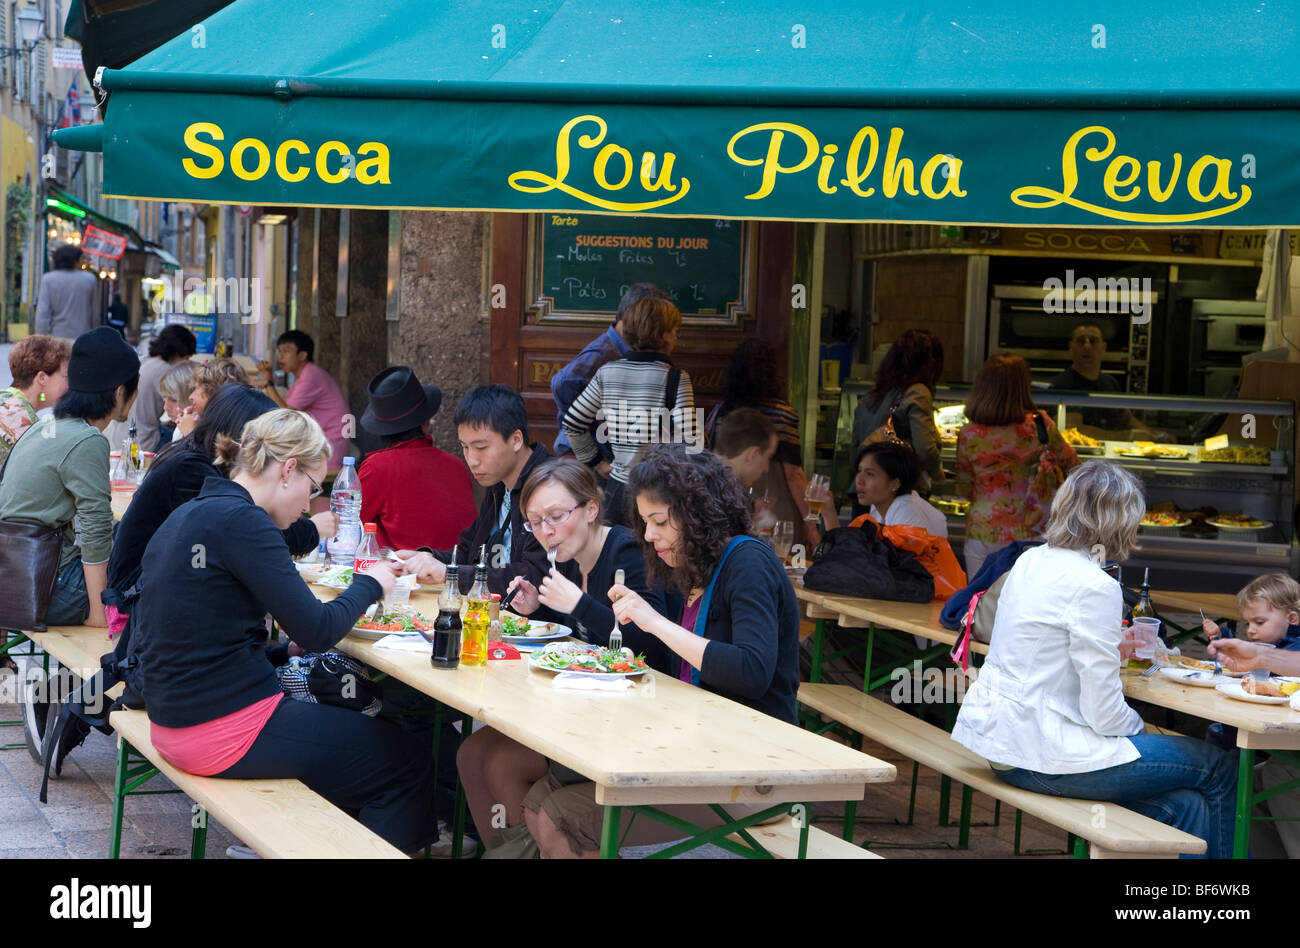 Lou Pilha Leva manger la socca, Galette de pois chiches, spécialité typique, Nice, Cote d Azur, Provence, France Banque D'Images